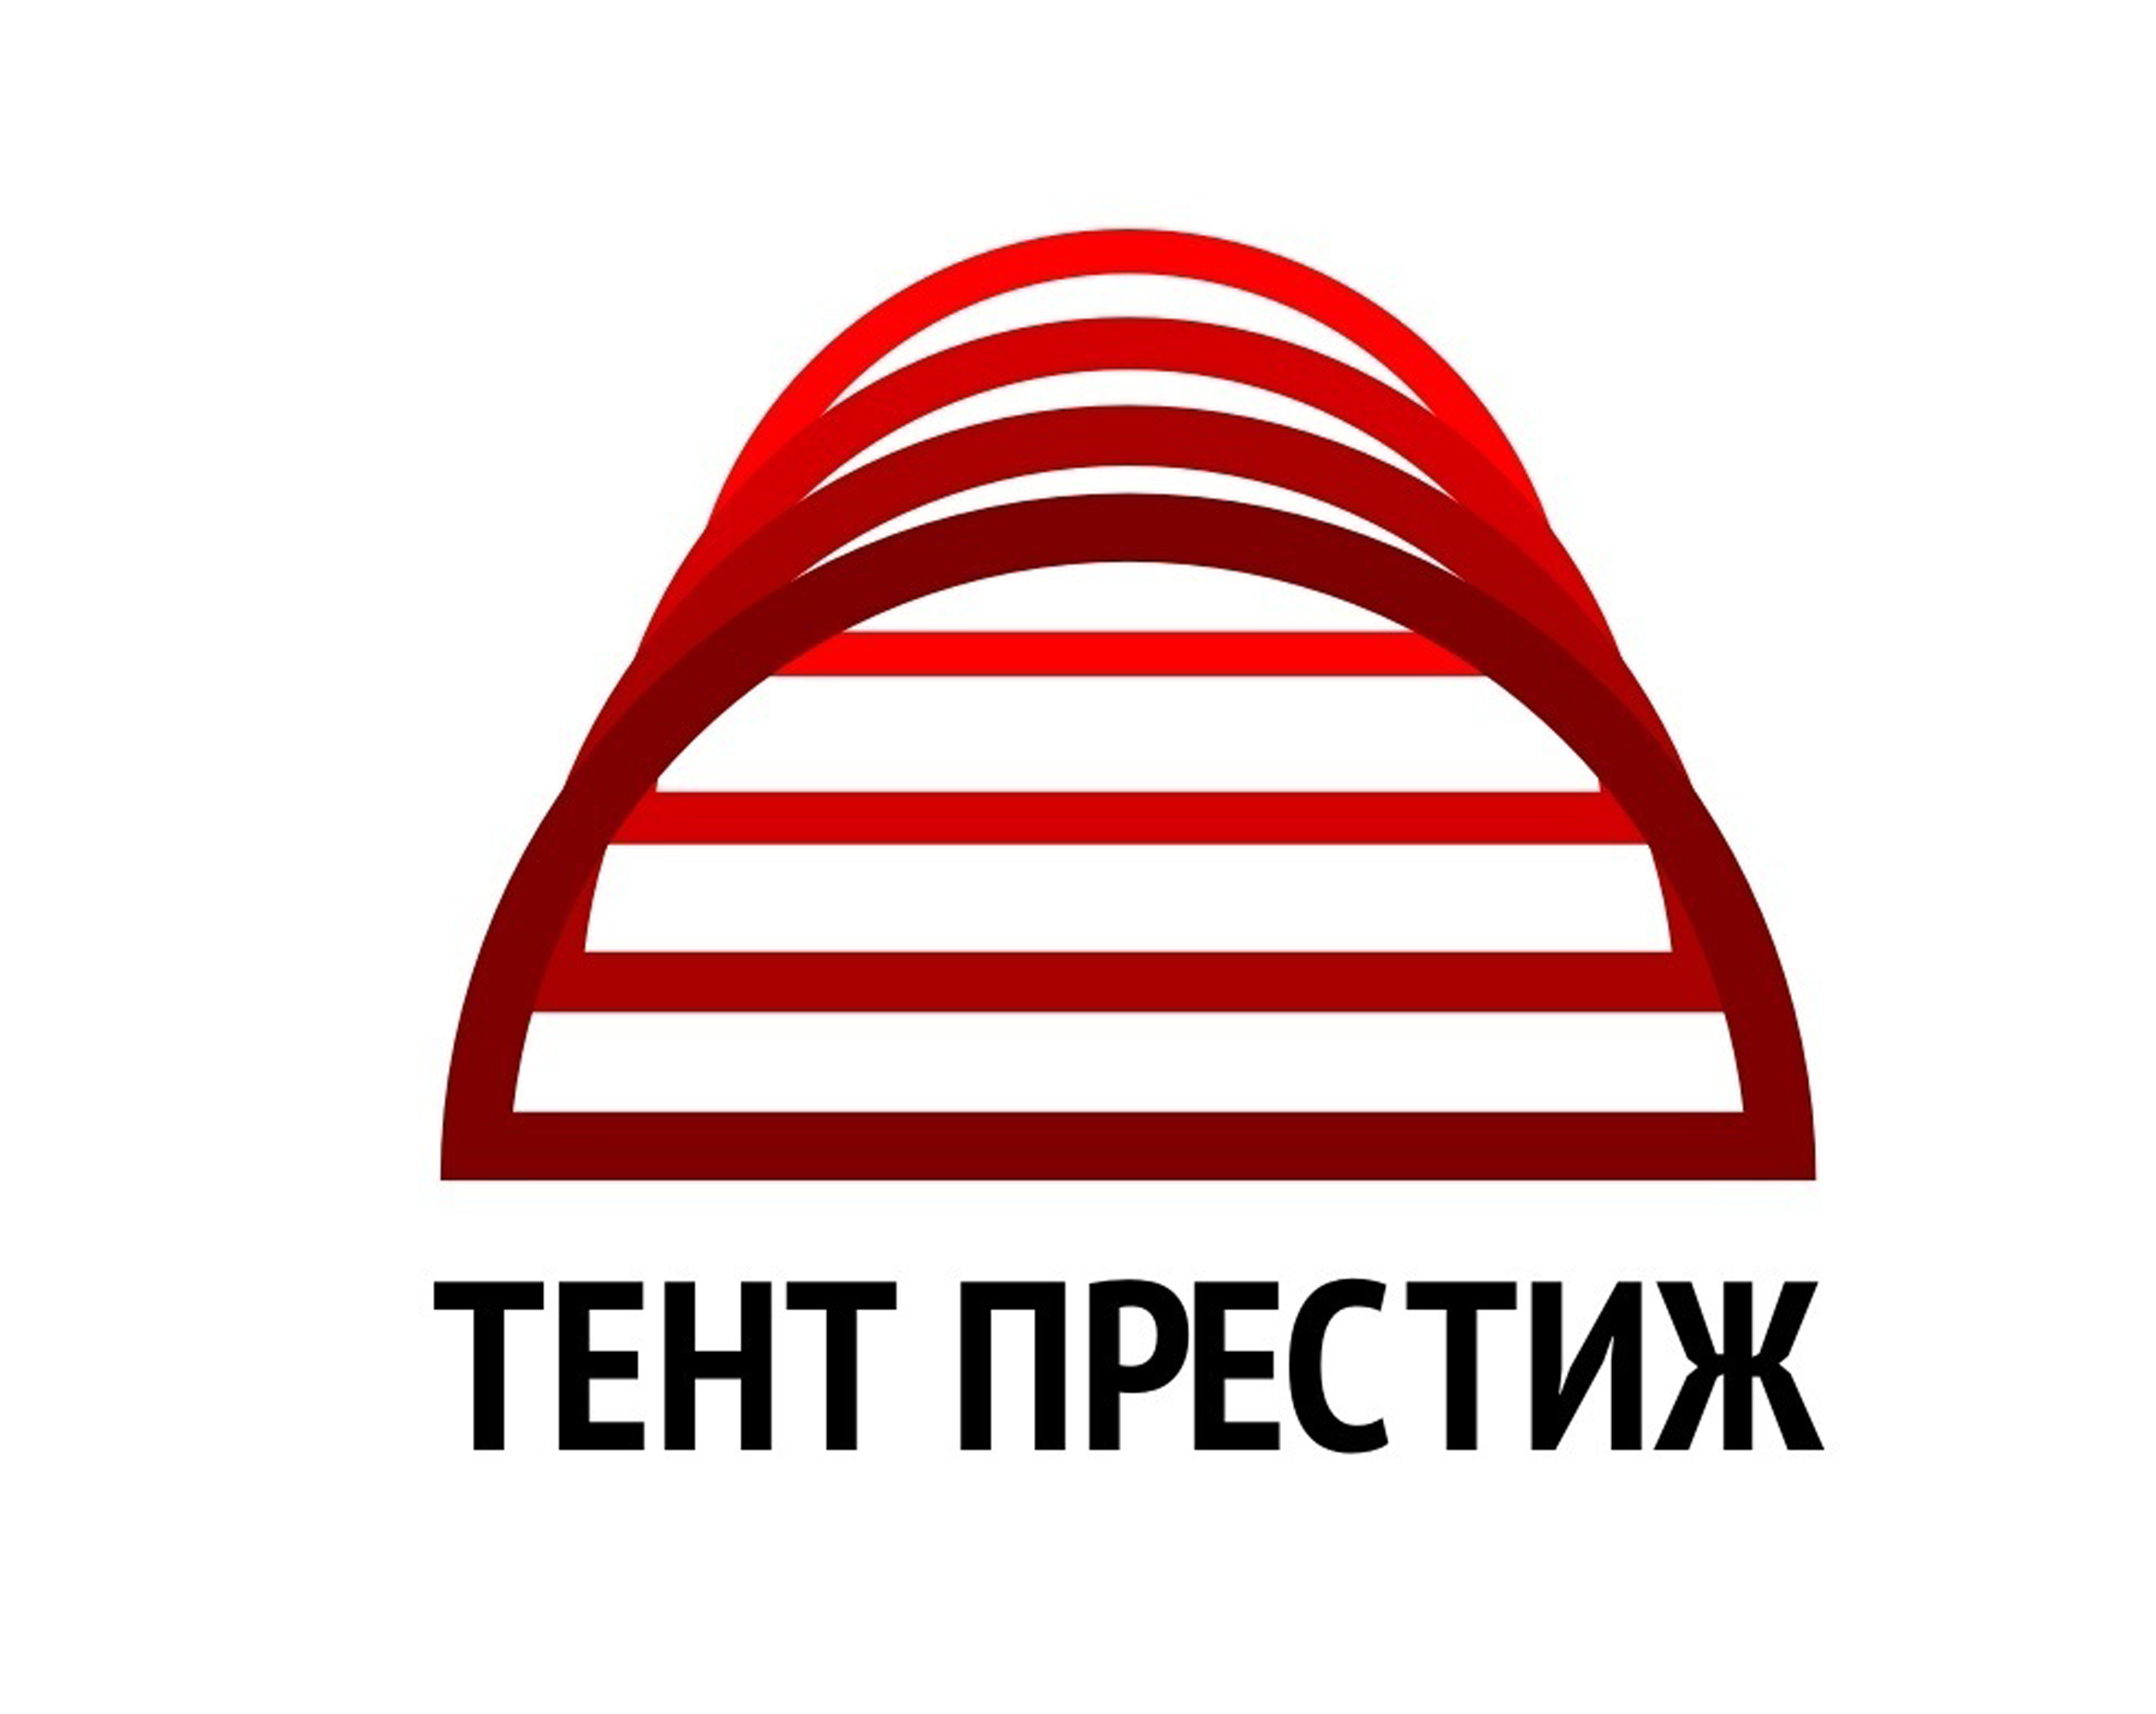  +7 (495) 003-96-36 компания ООО «Тент престиж»  арочные шатры и тенты от производителя!  Отправьте заявку на почту: Tentprestige17@yandex.ru 